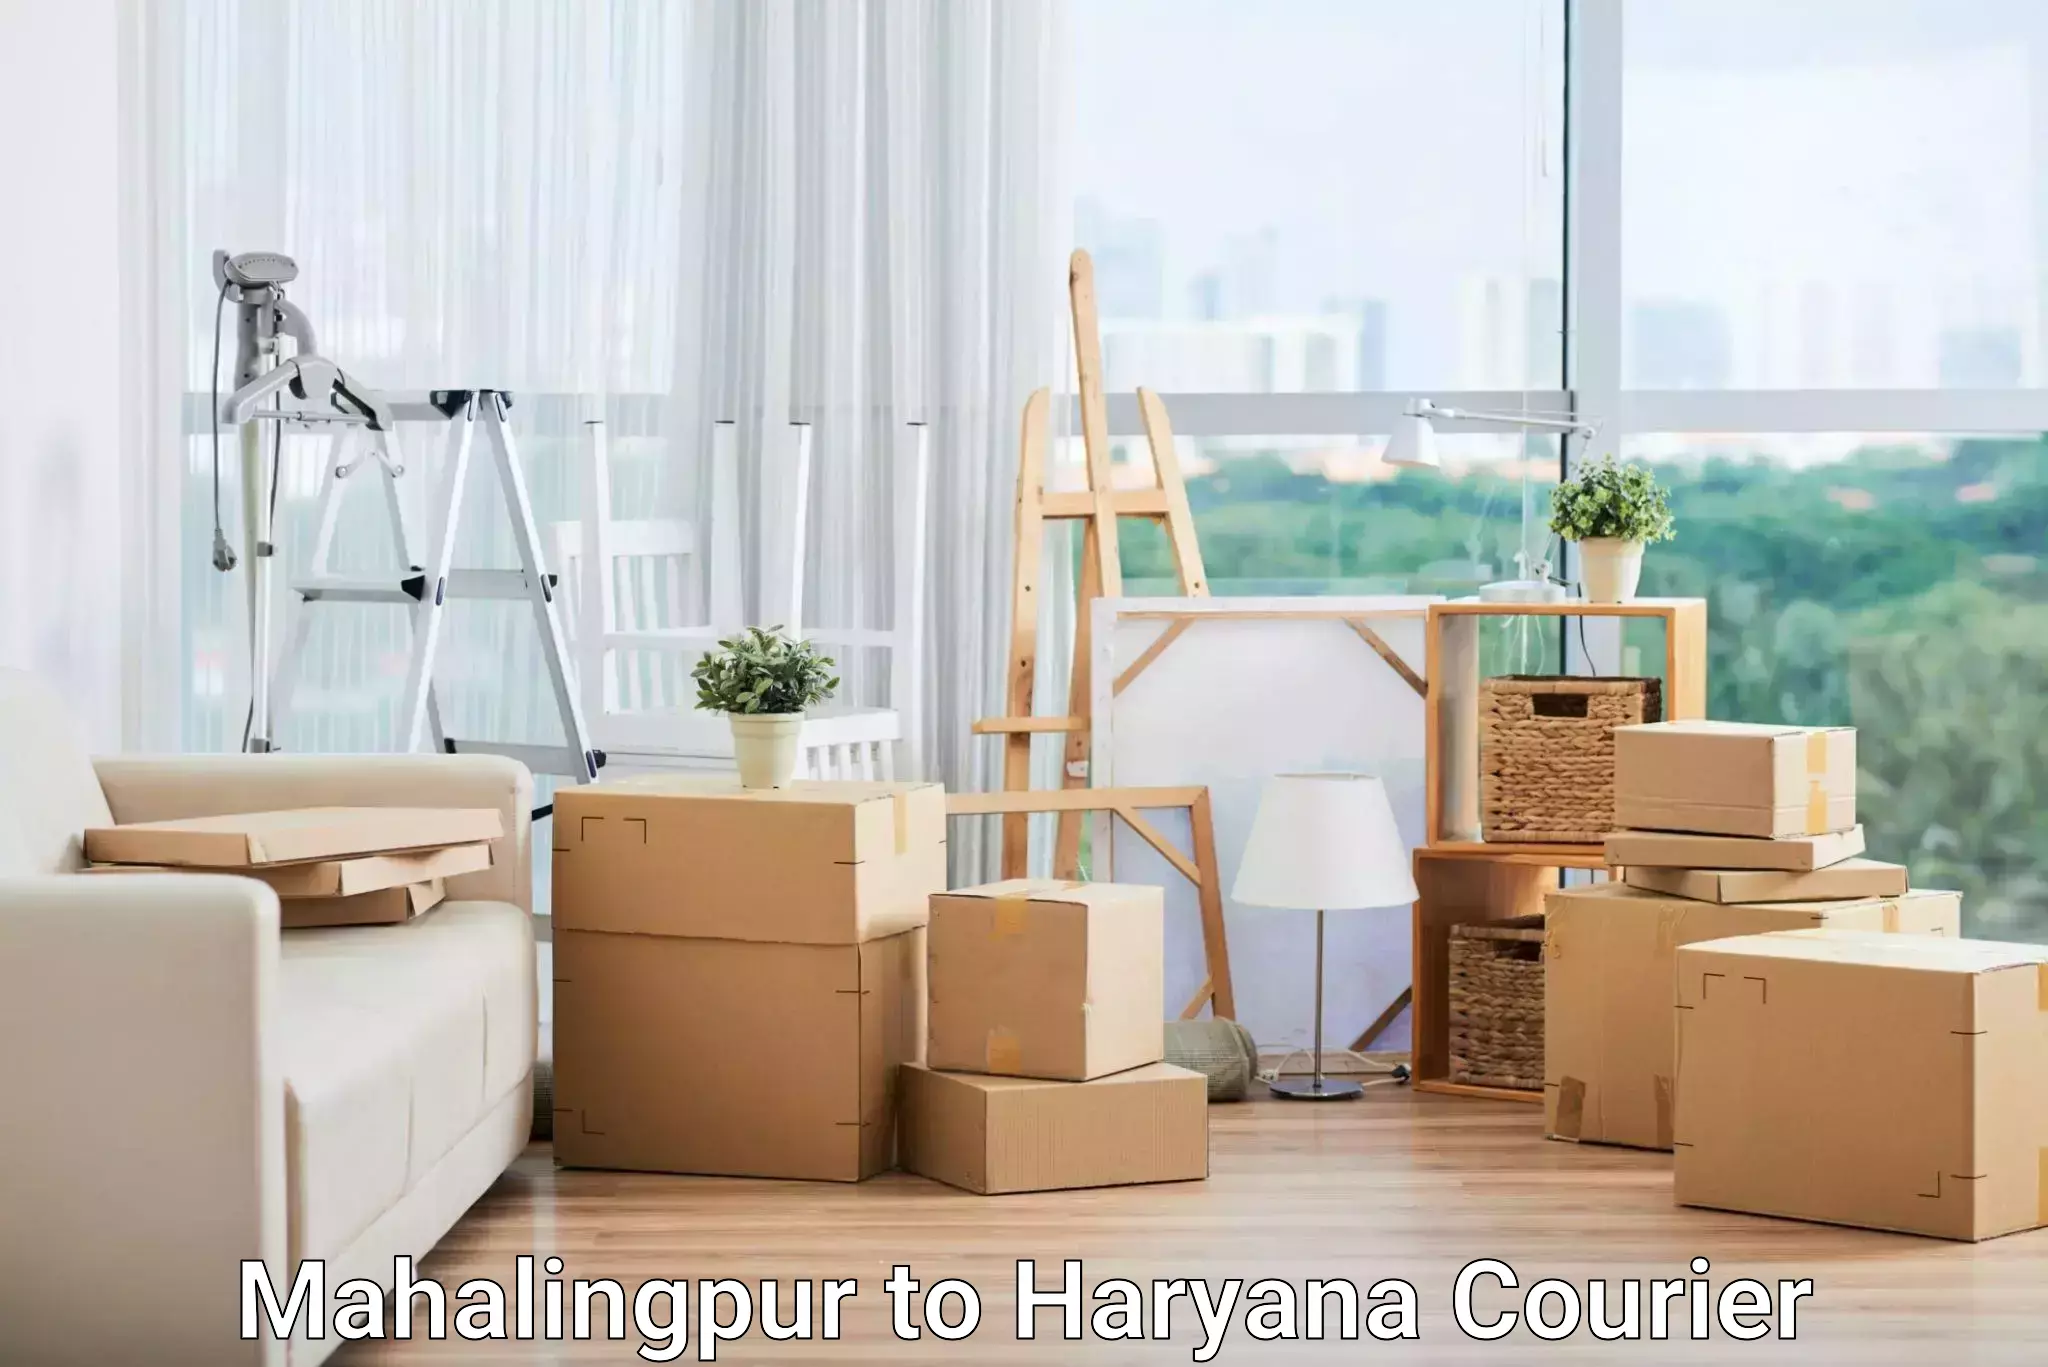 Cargo delivery service Mahalingpur to Charkhari